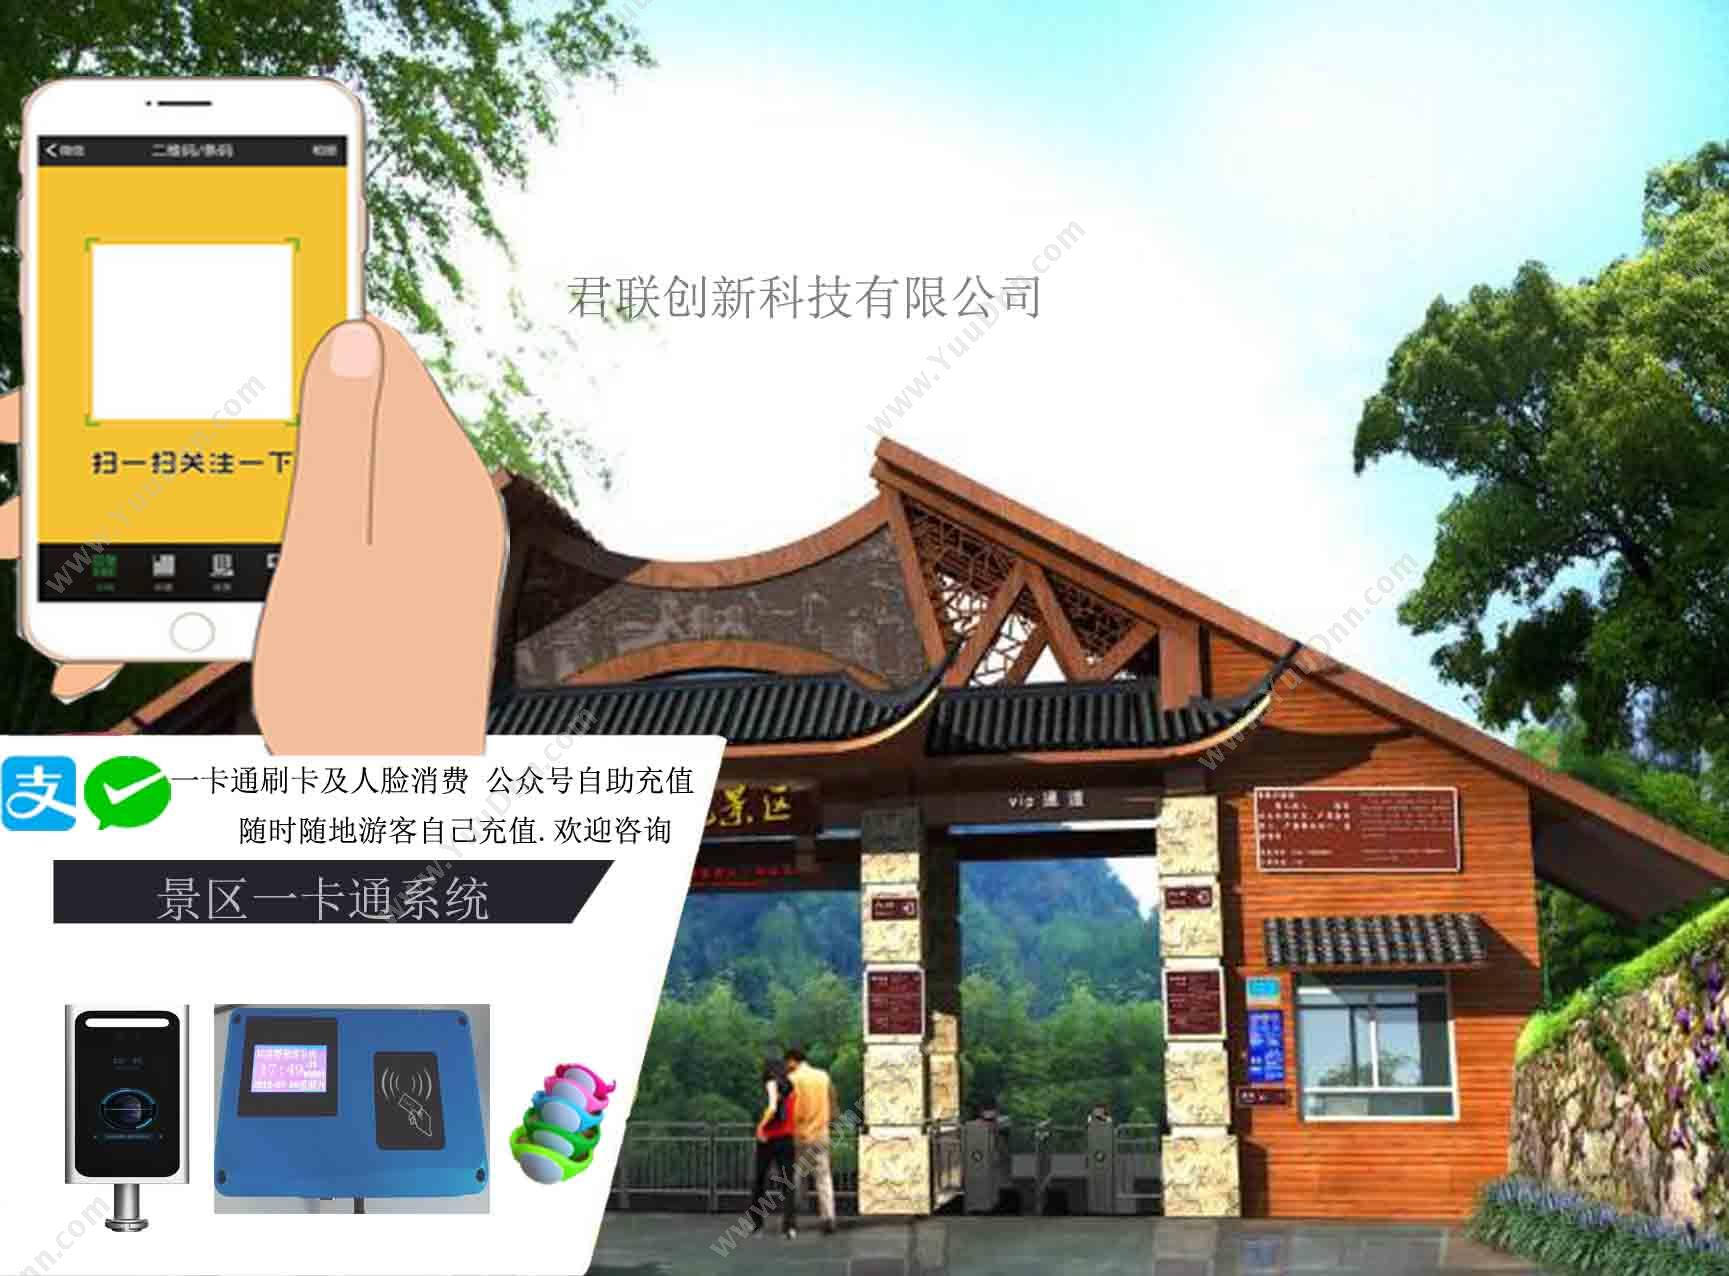 深圳市君联创新科技有限公司 微信储值卡系统 自助机现金扫码充值 BI商业智能